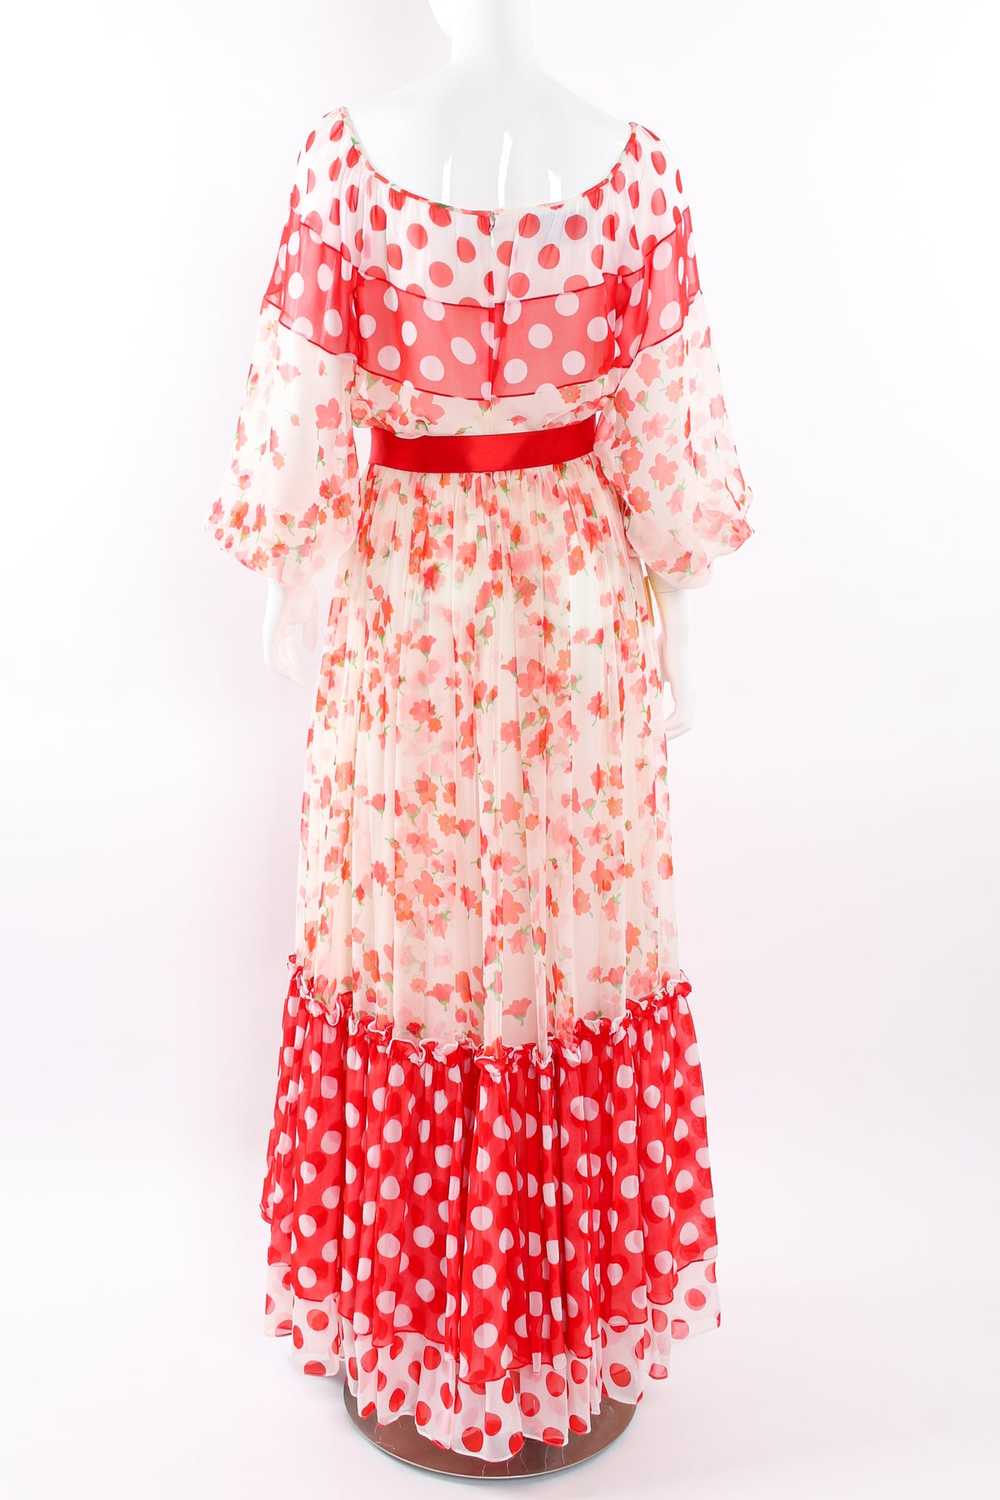 MIGNON Blooming Polka Dot Dress - image 12